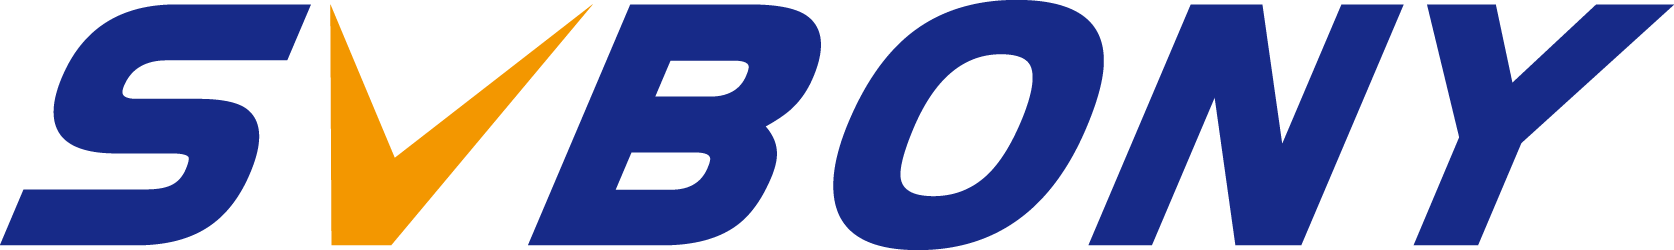 svbony logo